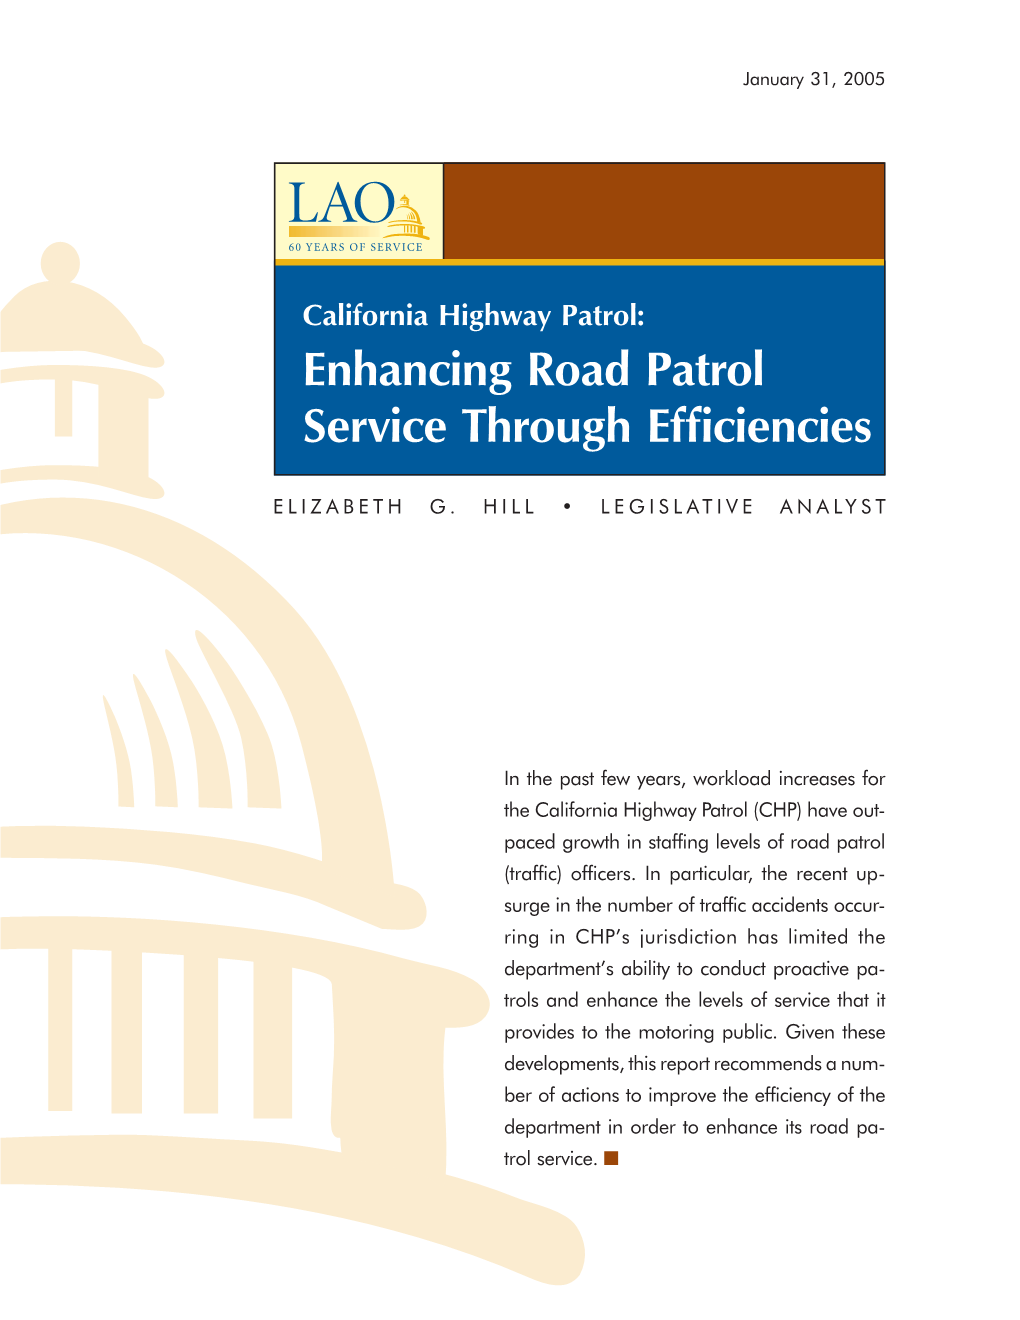 California Highway Patrol: Enhancing Road Patrol Service Through Efficiencies